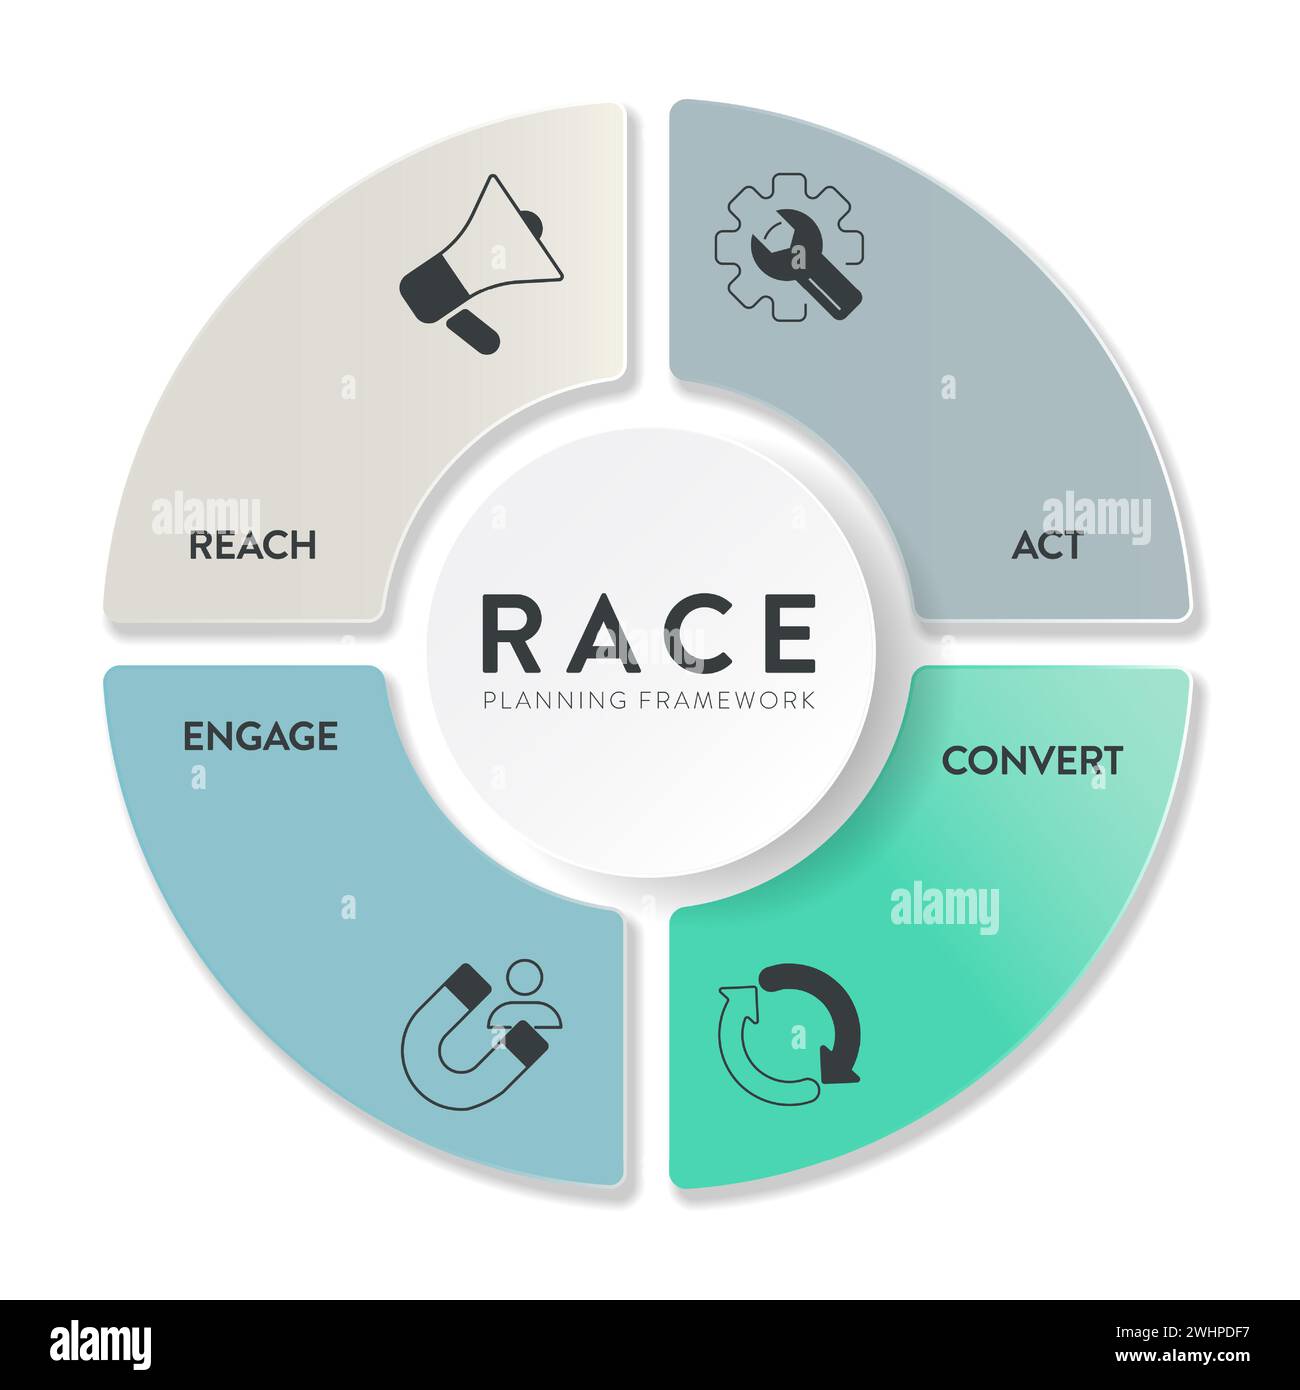 RACE Digital Marketing Planning Framework Infografik Diagramm Illustration Banner Vorlage mit Symbol Set Vektor hat Reichweite, Handeln, Konvertieren und enga Stock Vektor